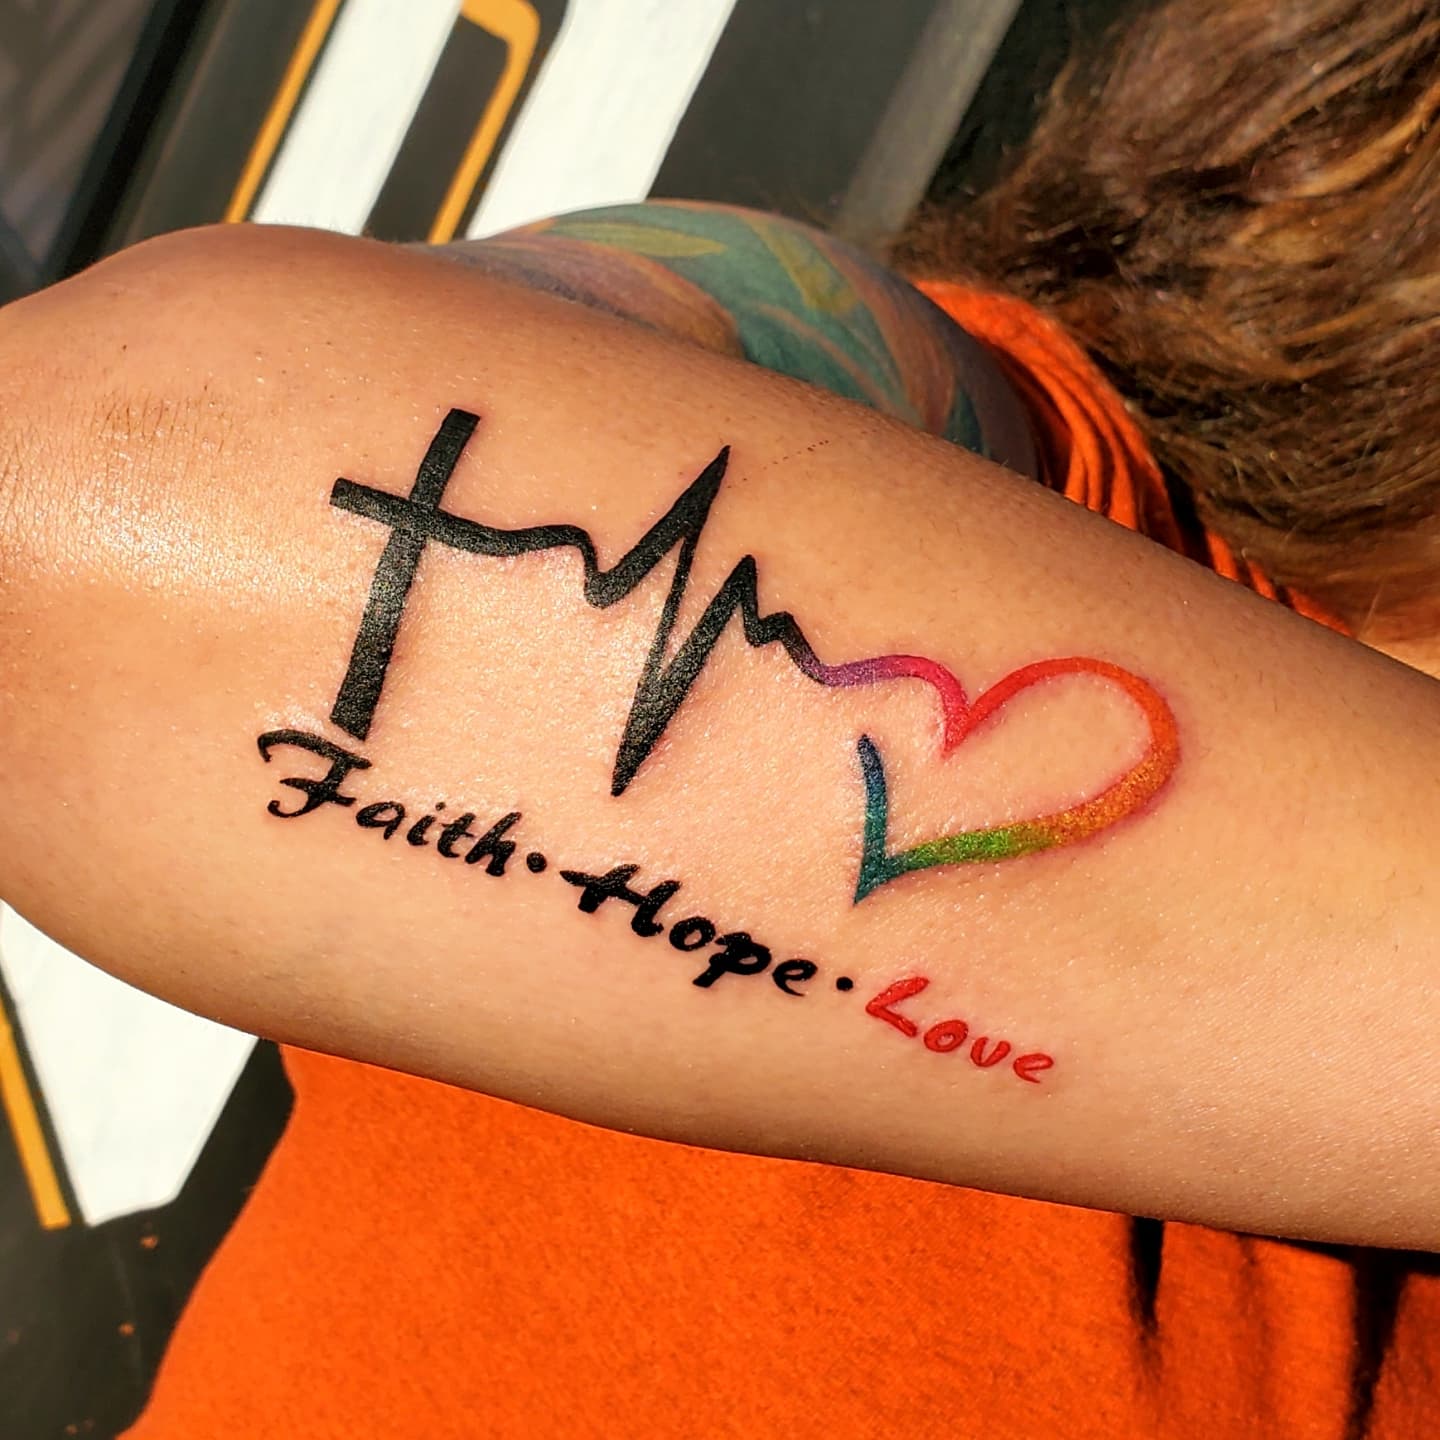 Glaube-Liebe-Hoffnung-Tattoo-33-tolle-Designs-zur-Inspiration